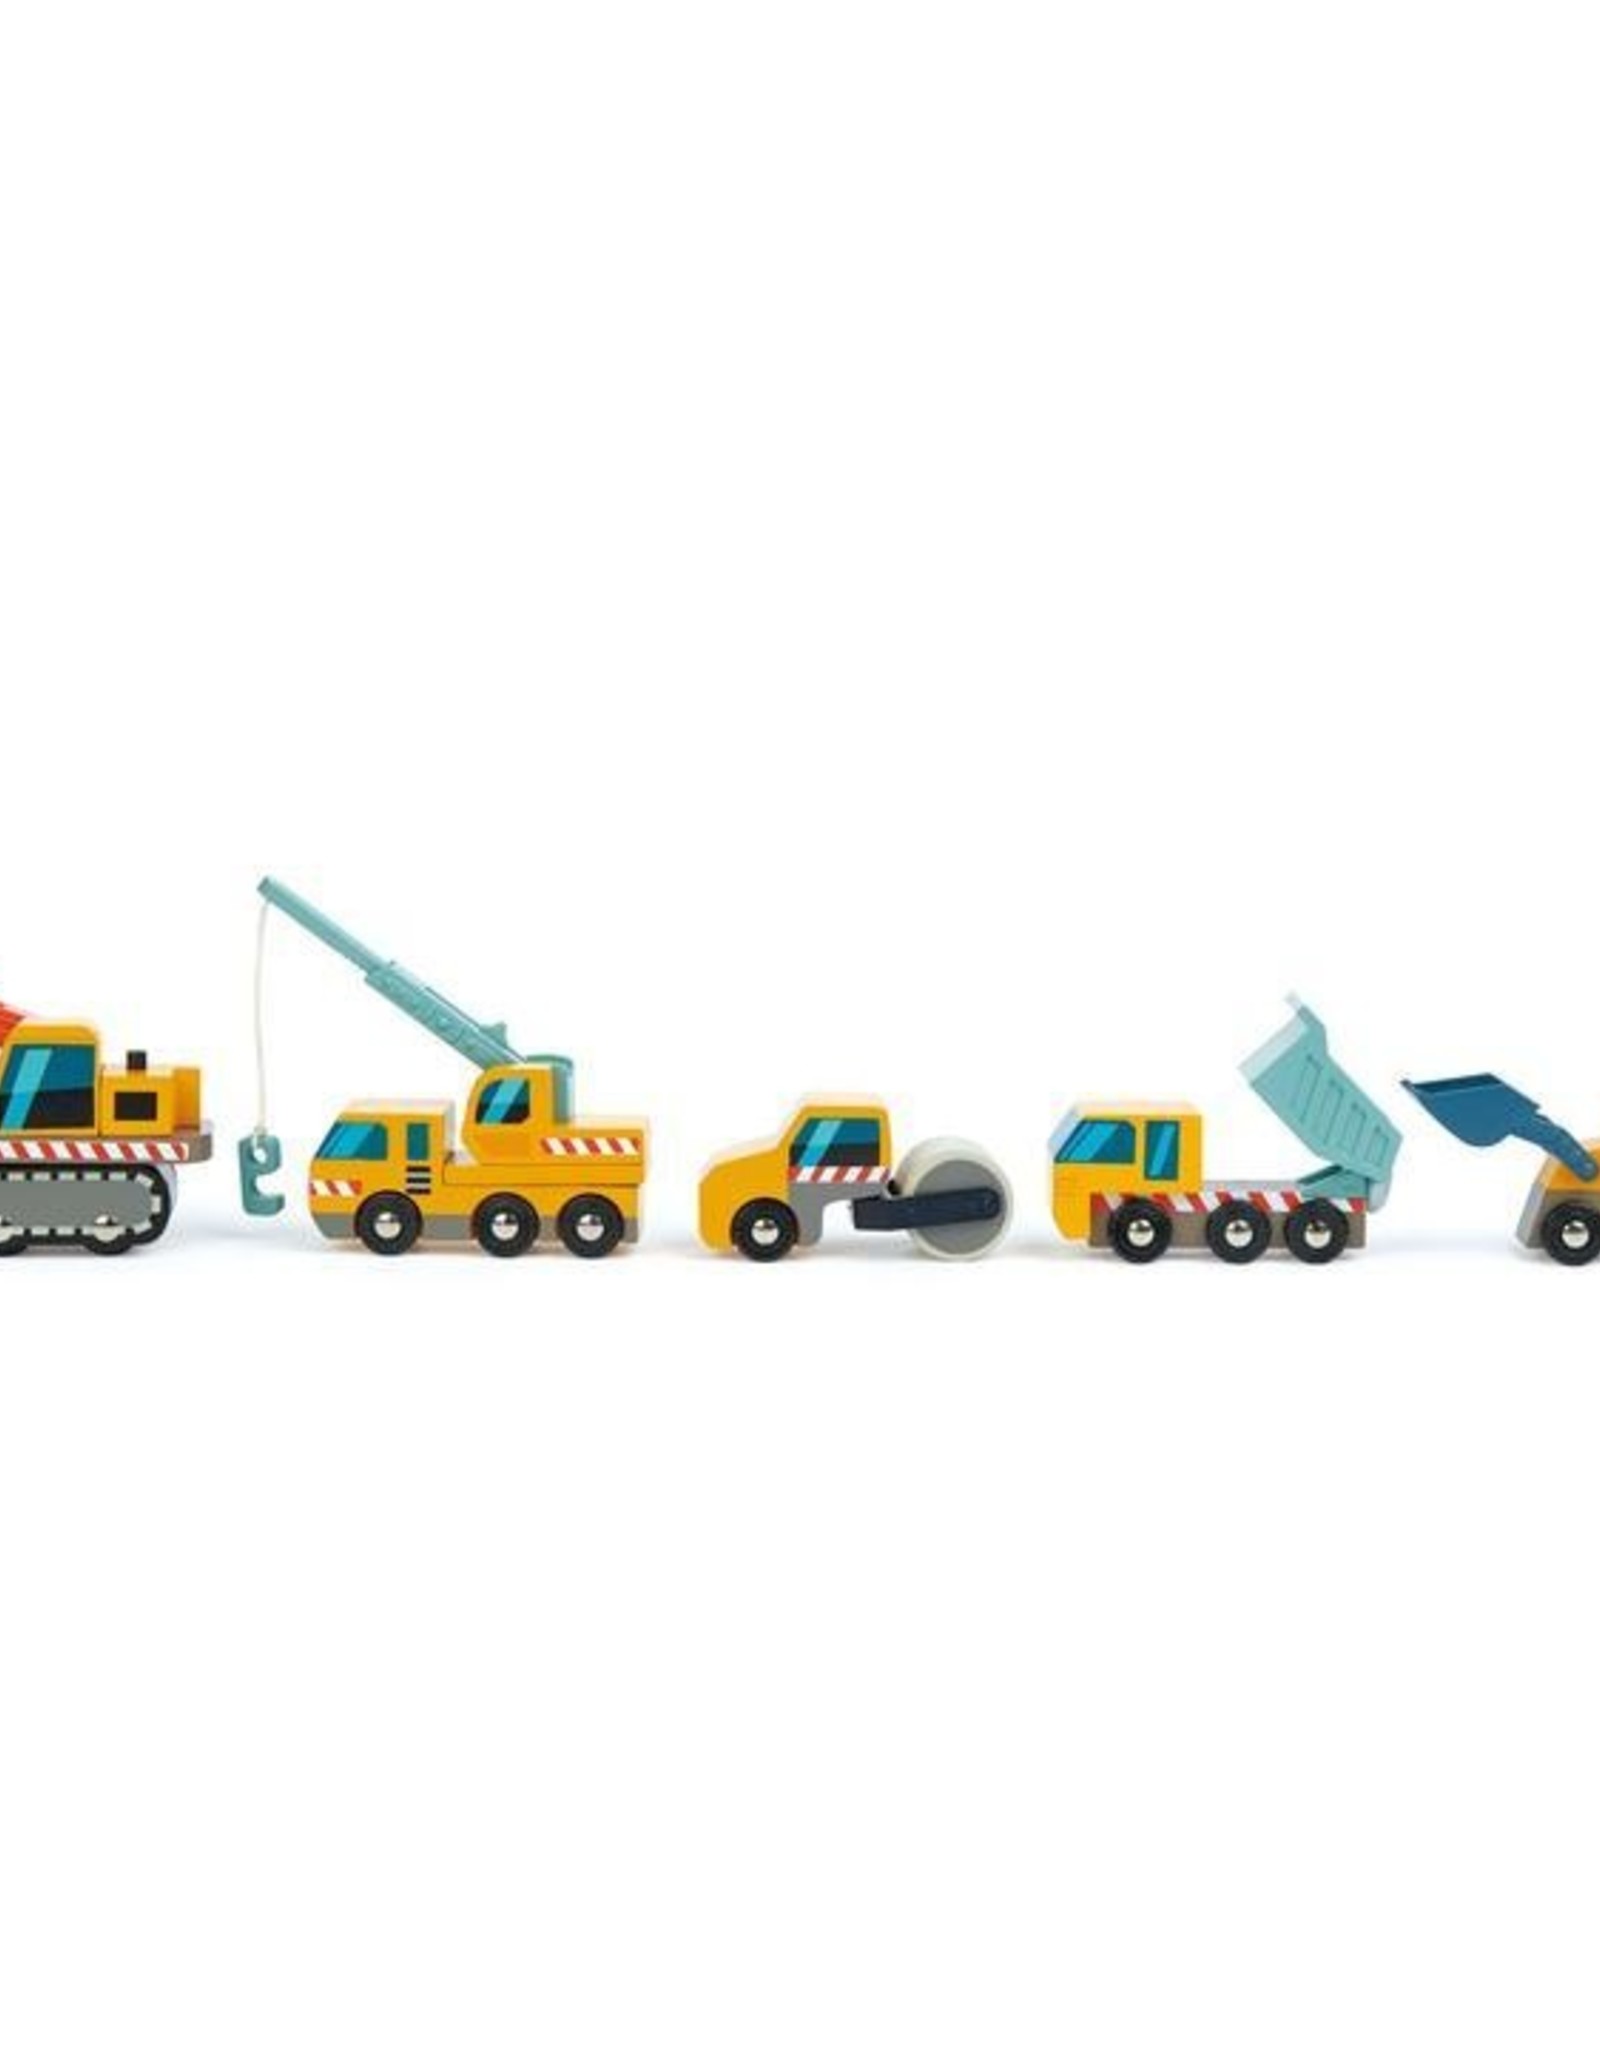 Tender leaf toys Camions de construction